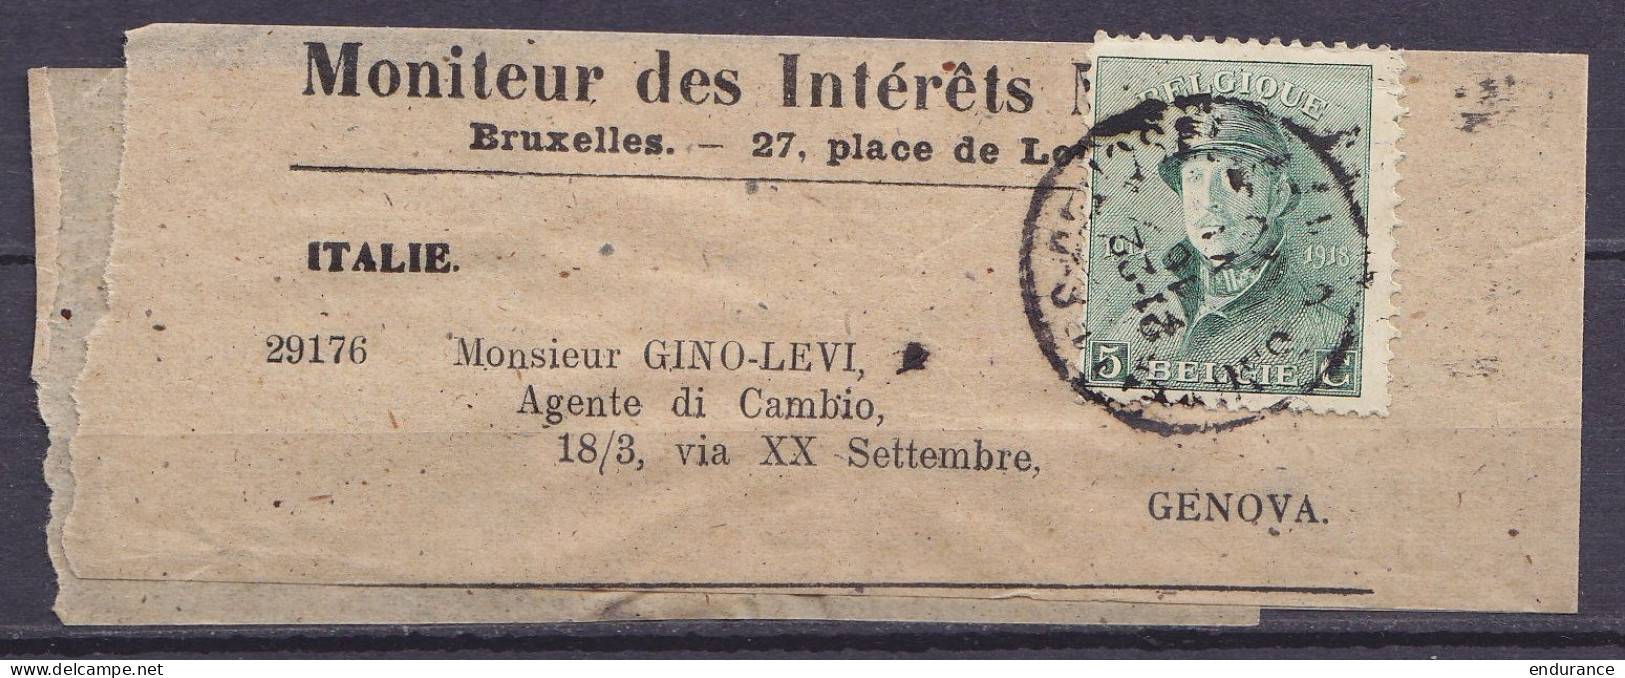 Bande D'imprimé "Moniteur Des Intérêts" Affr. N°167 Càd BRUXELLES /16 VII 1920 Pour GENOVA Italie - 1919-1920 Trench Helmet